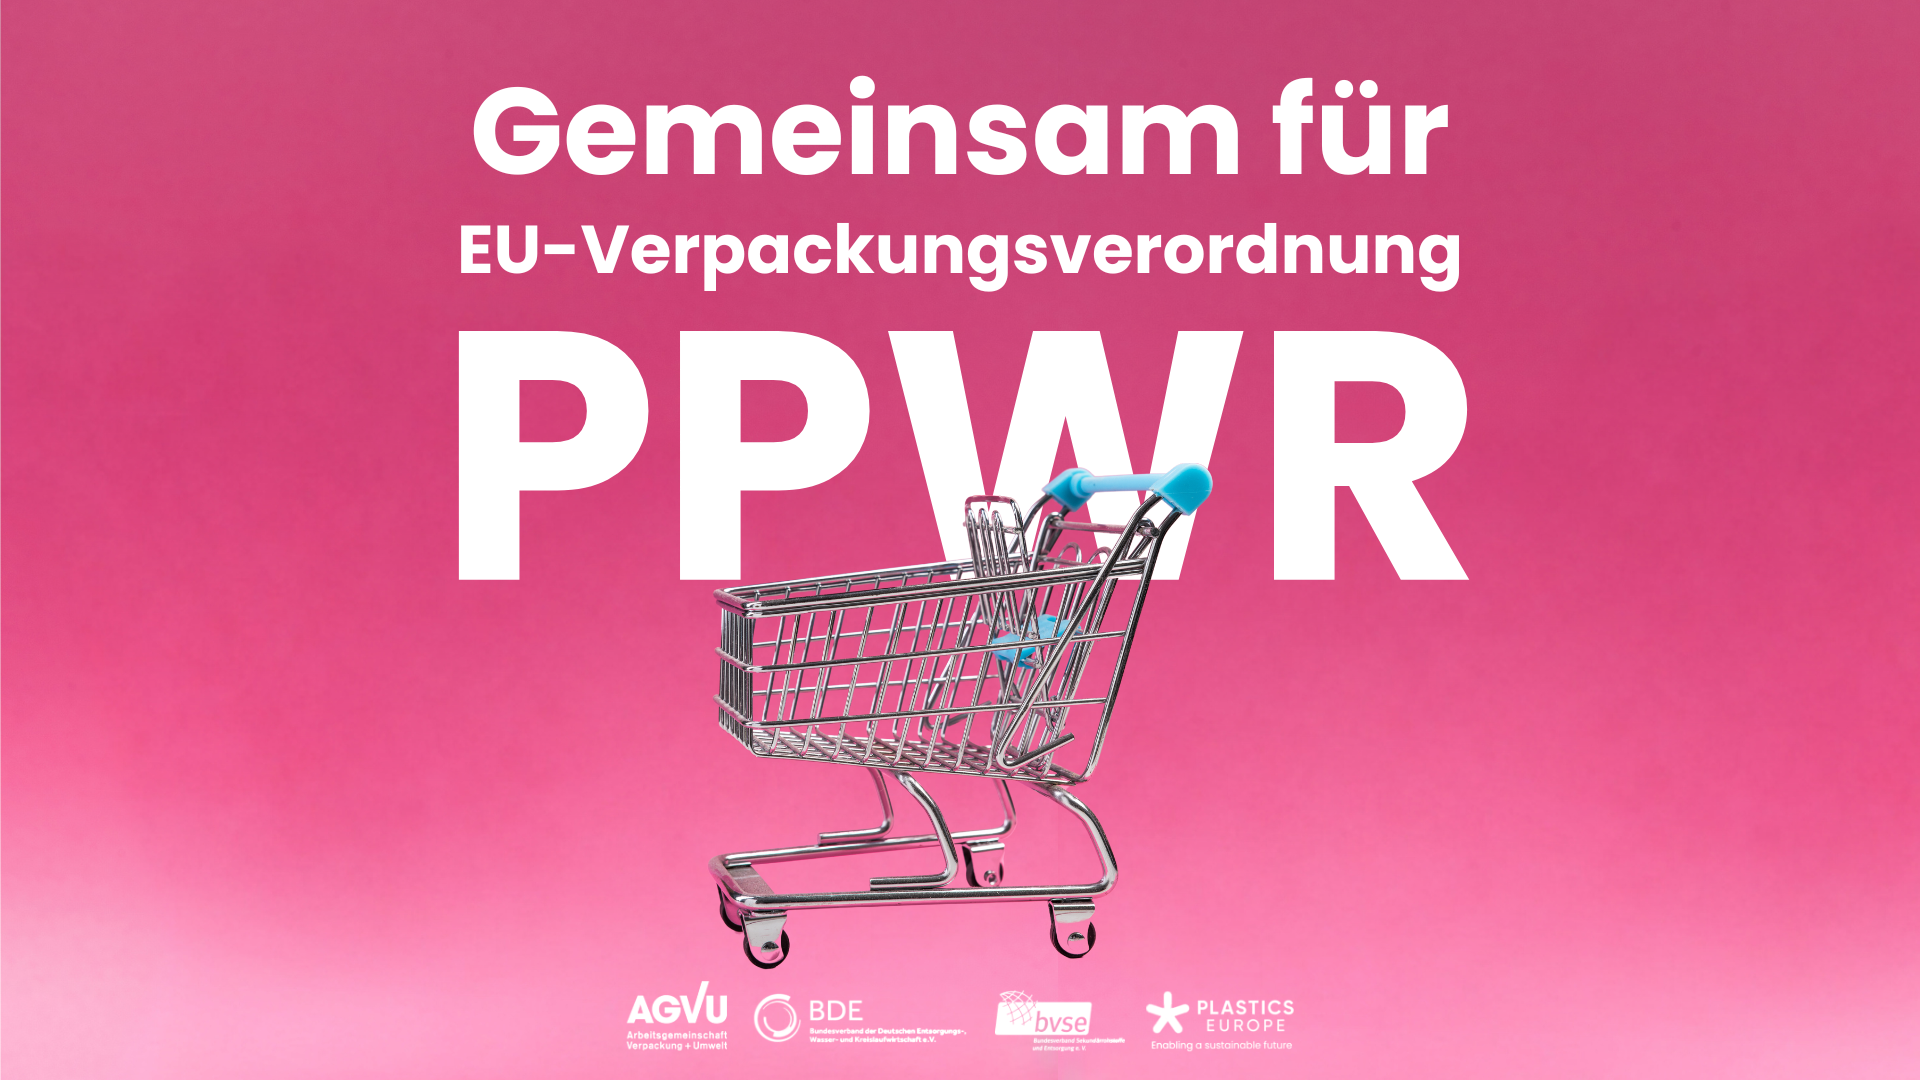 Verbände gemeinsam für die EU-Verpackungsverordnung PPWR